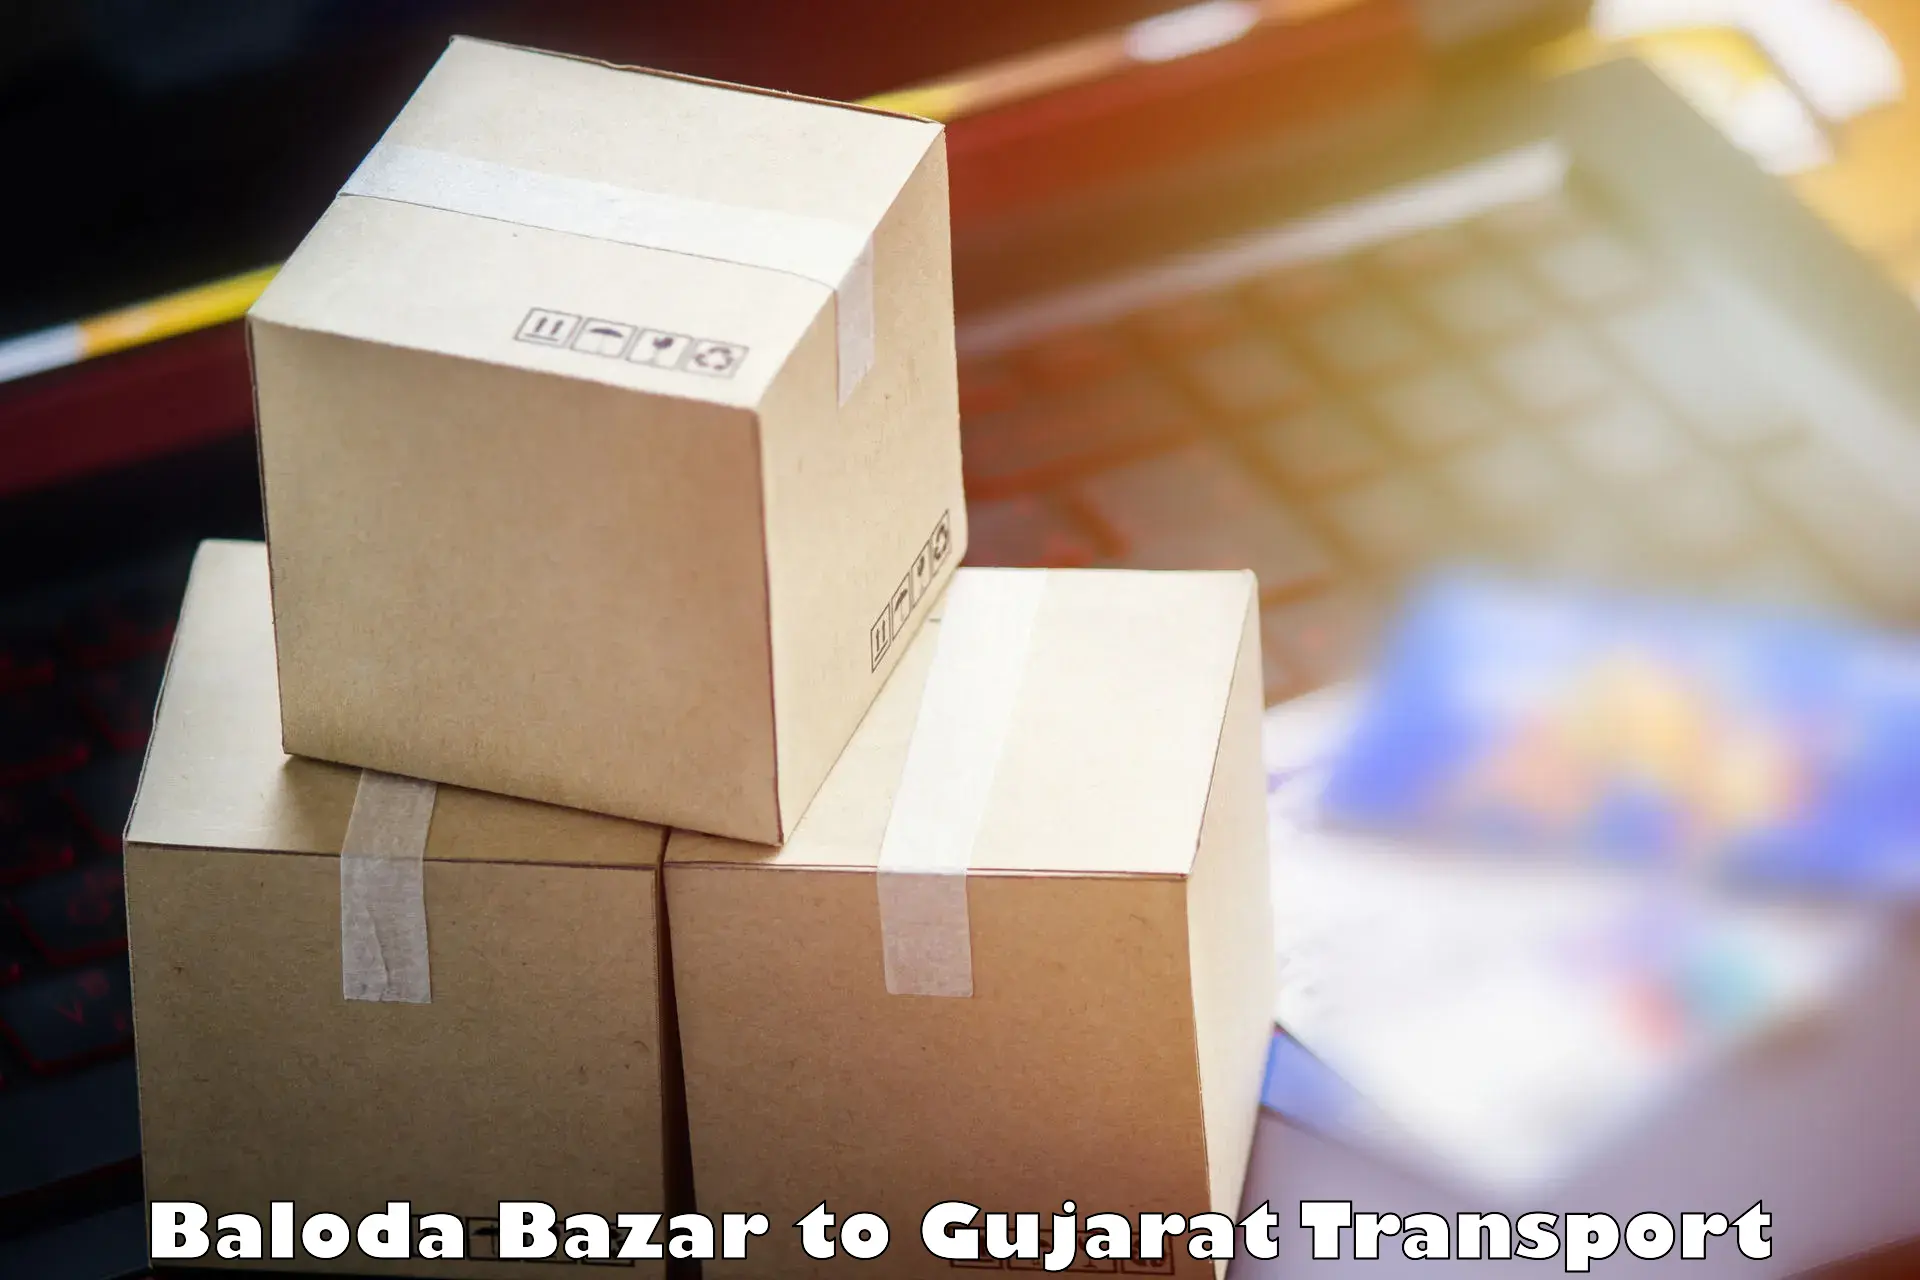 Road transport online services Baloda Bazar to Halvad